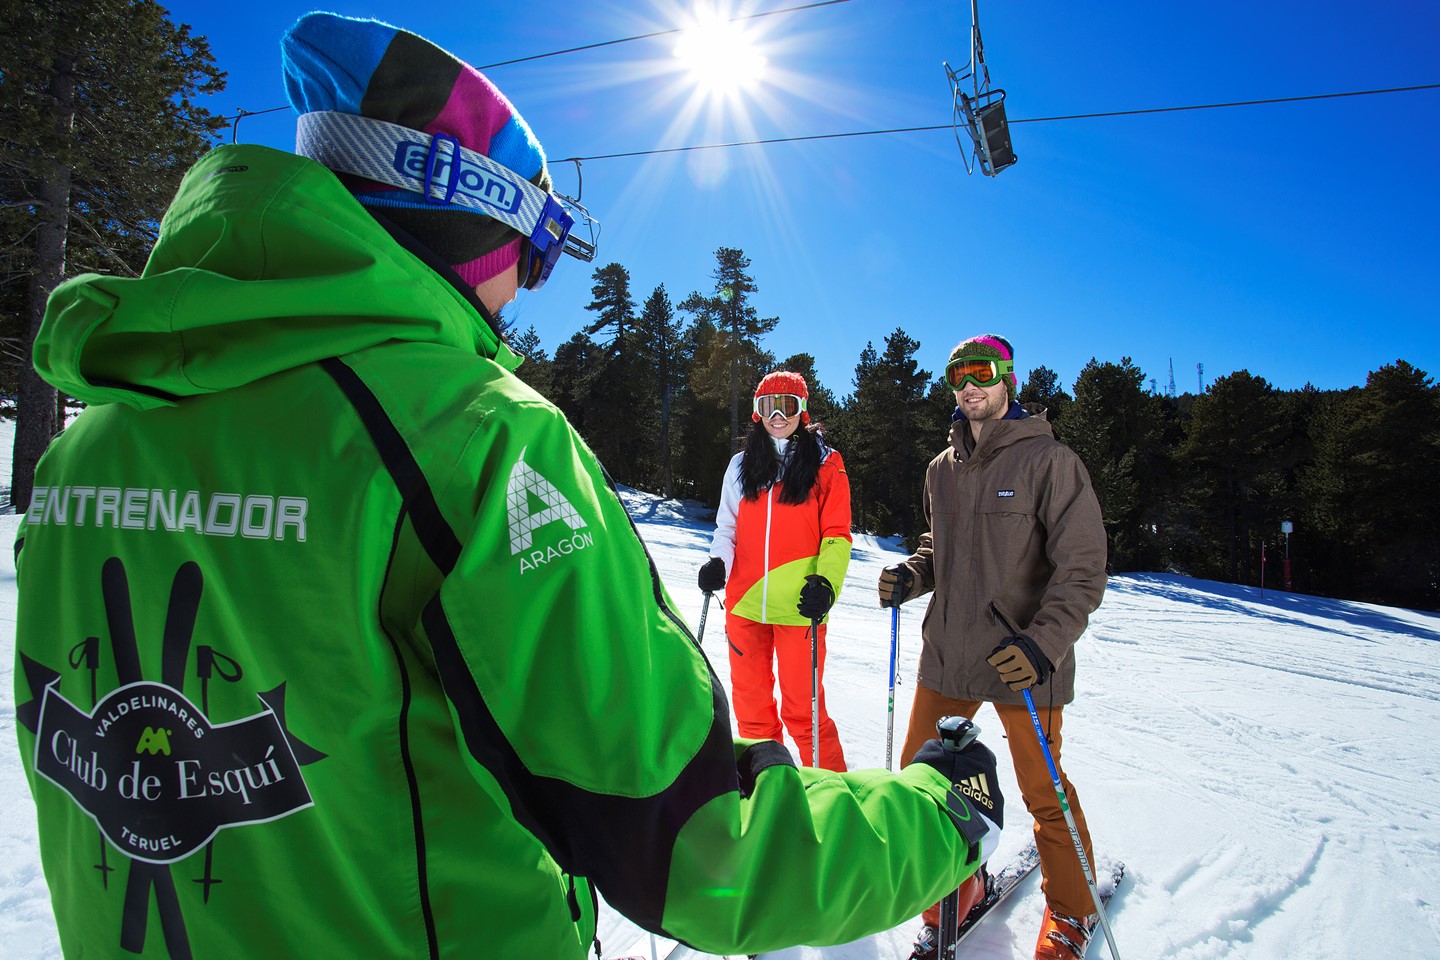 Aramón Javalambre y Aramón Valdelinares, sedes para la formación de técnicos deportivos en esquí alpino